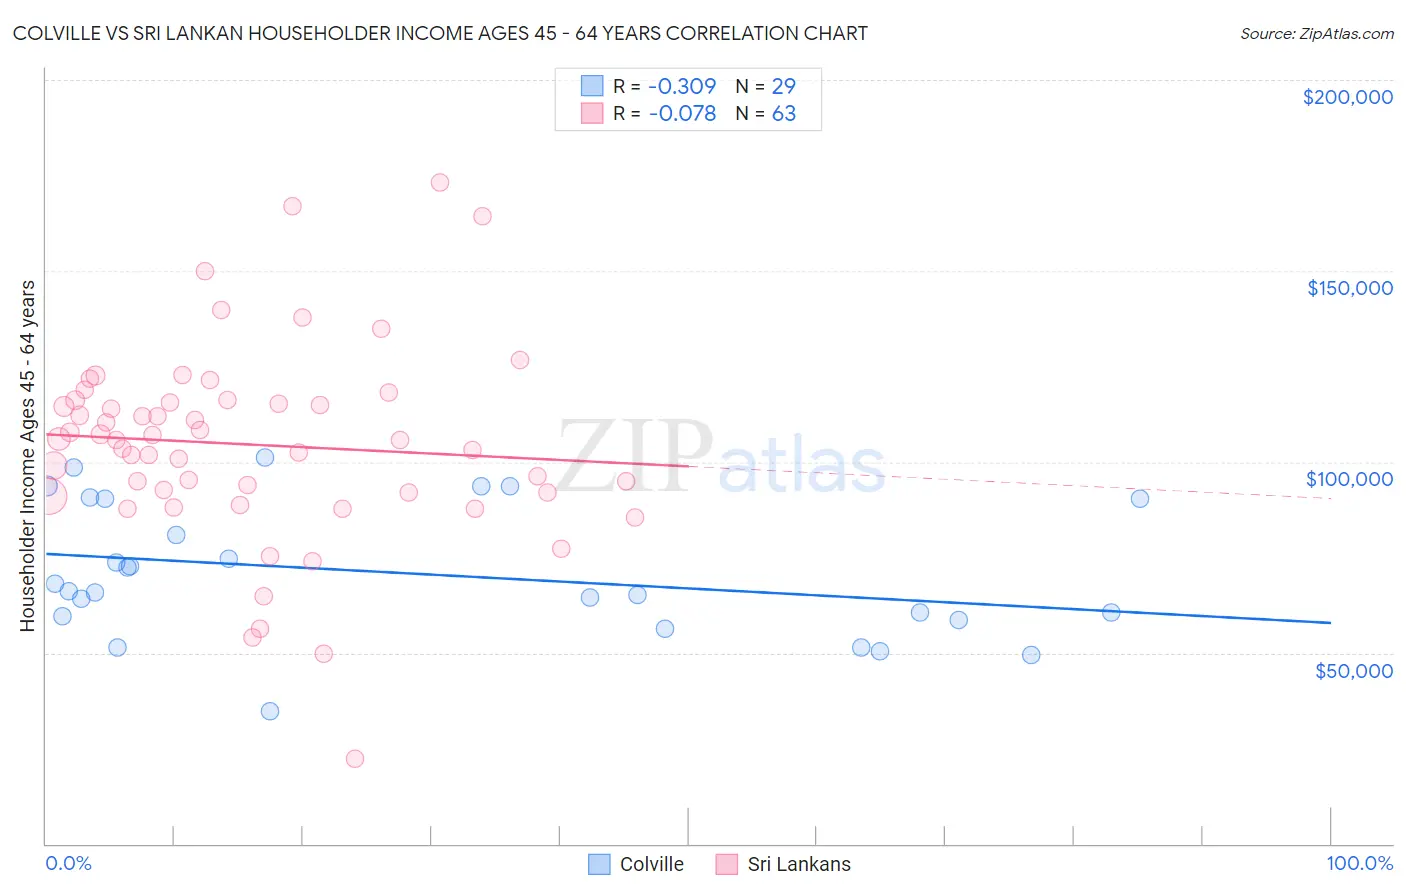 Colville vs Sri Lankan Householder Income Ages 45 - 64 years